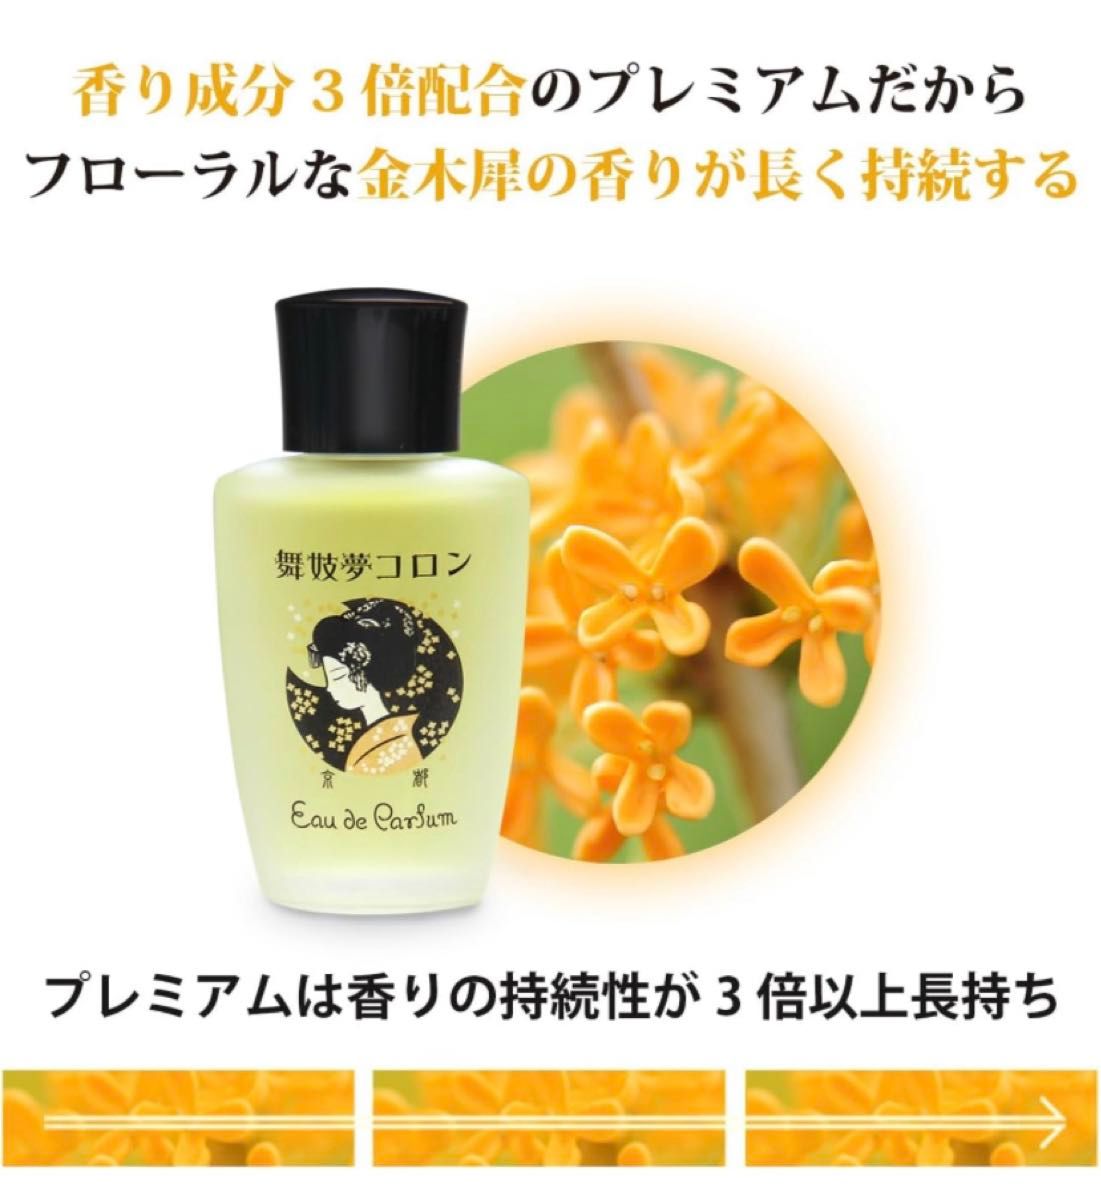 舞妓夢コロン プレミアム 金木犀の香り 20mL 日本製